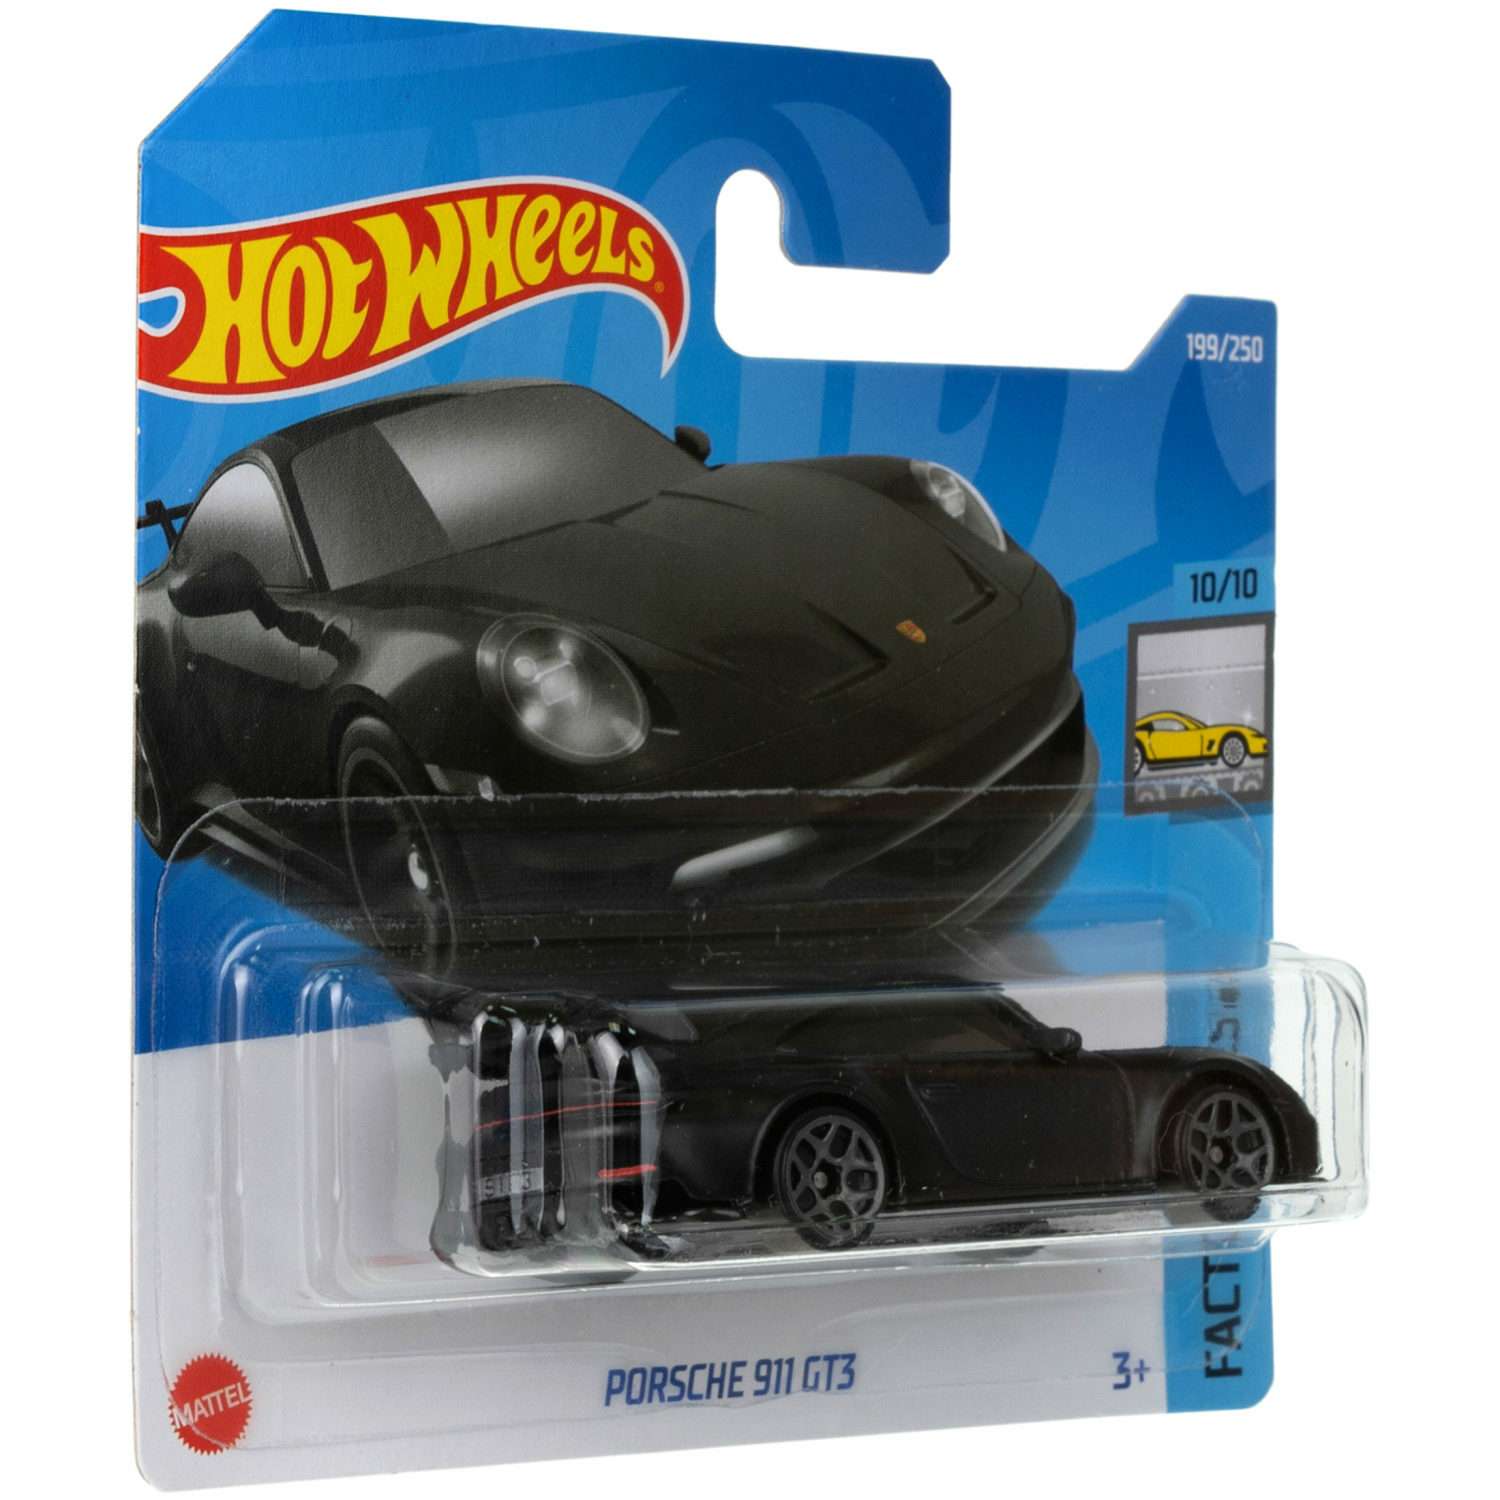 Коллекционная машинка Hot Wheels Porsche 911 gt3 5785-100 - фото 5